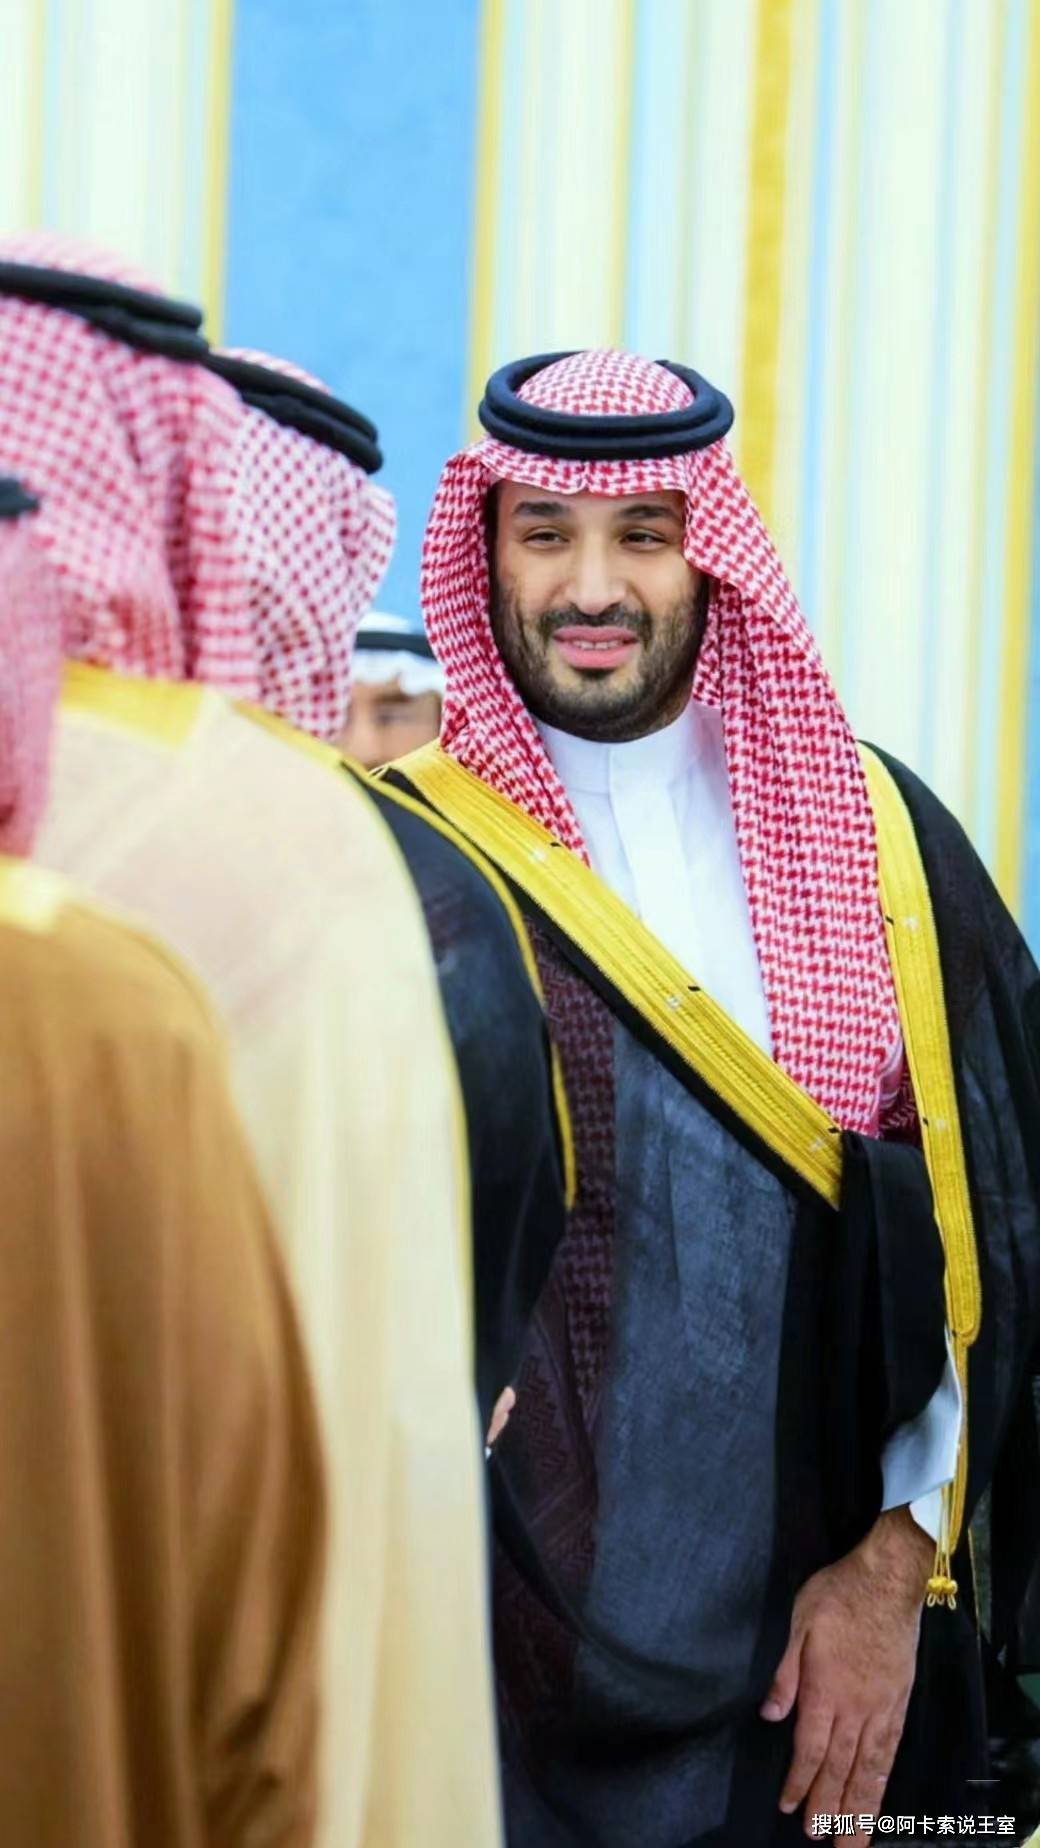 沙特迎来一年一度的斋月,王储萨勒曼主持活动,王室将迎来一个月的斋月